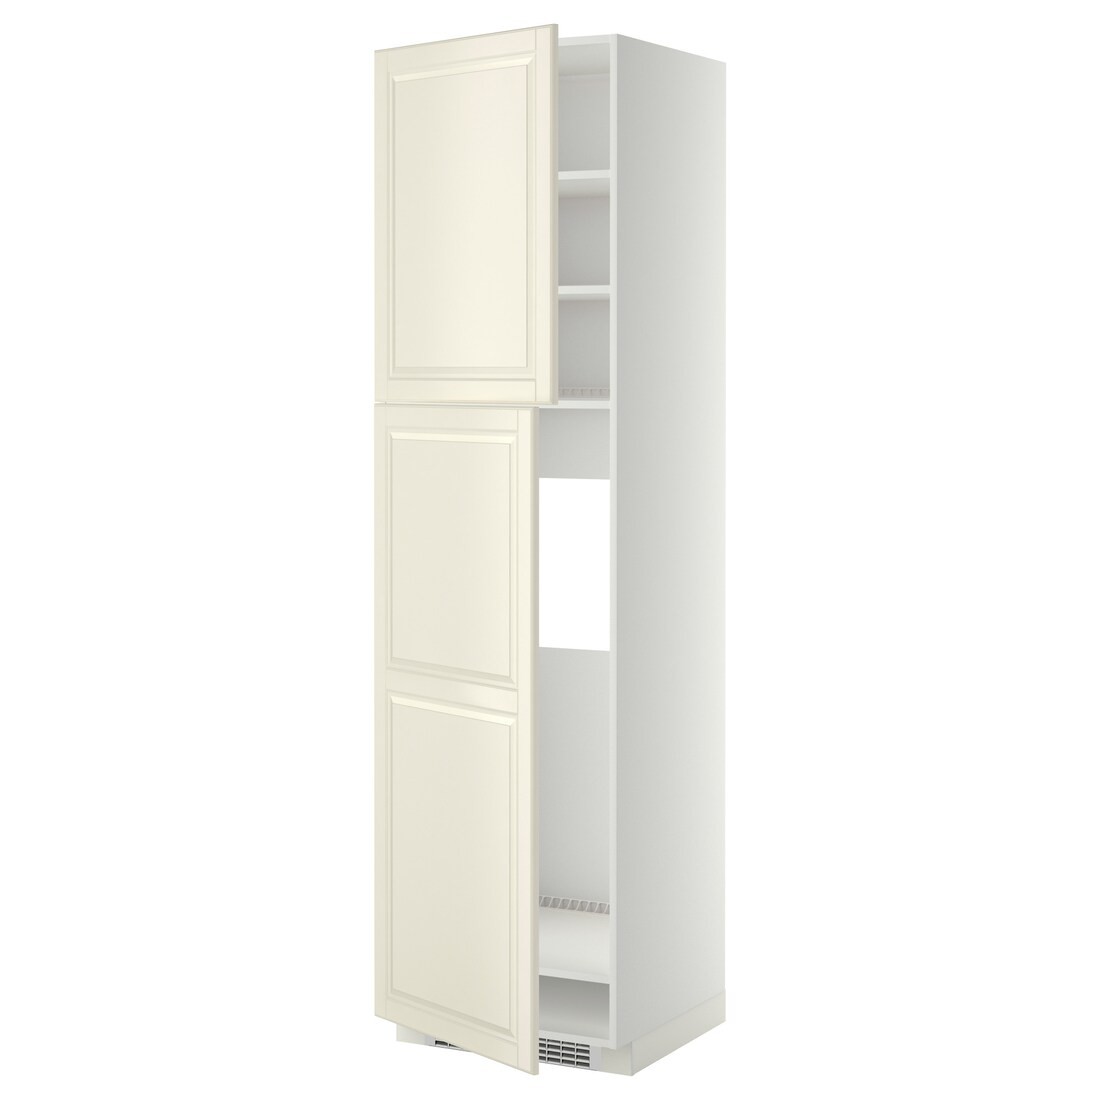 METOD МЕТОД Высокий шкаф для холодильника, белый / Bodbyn кремовый, 60x60x220 см